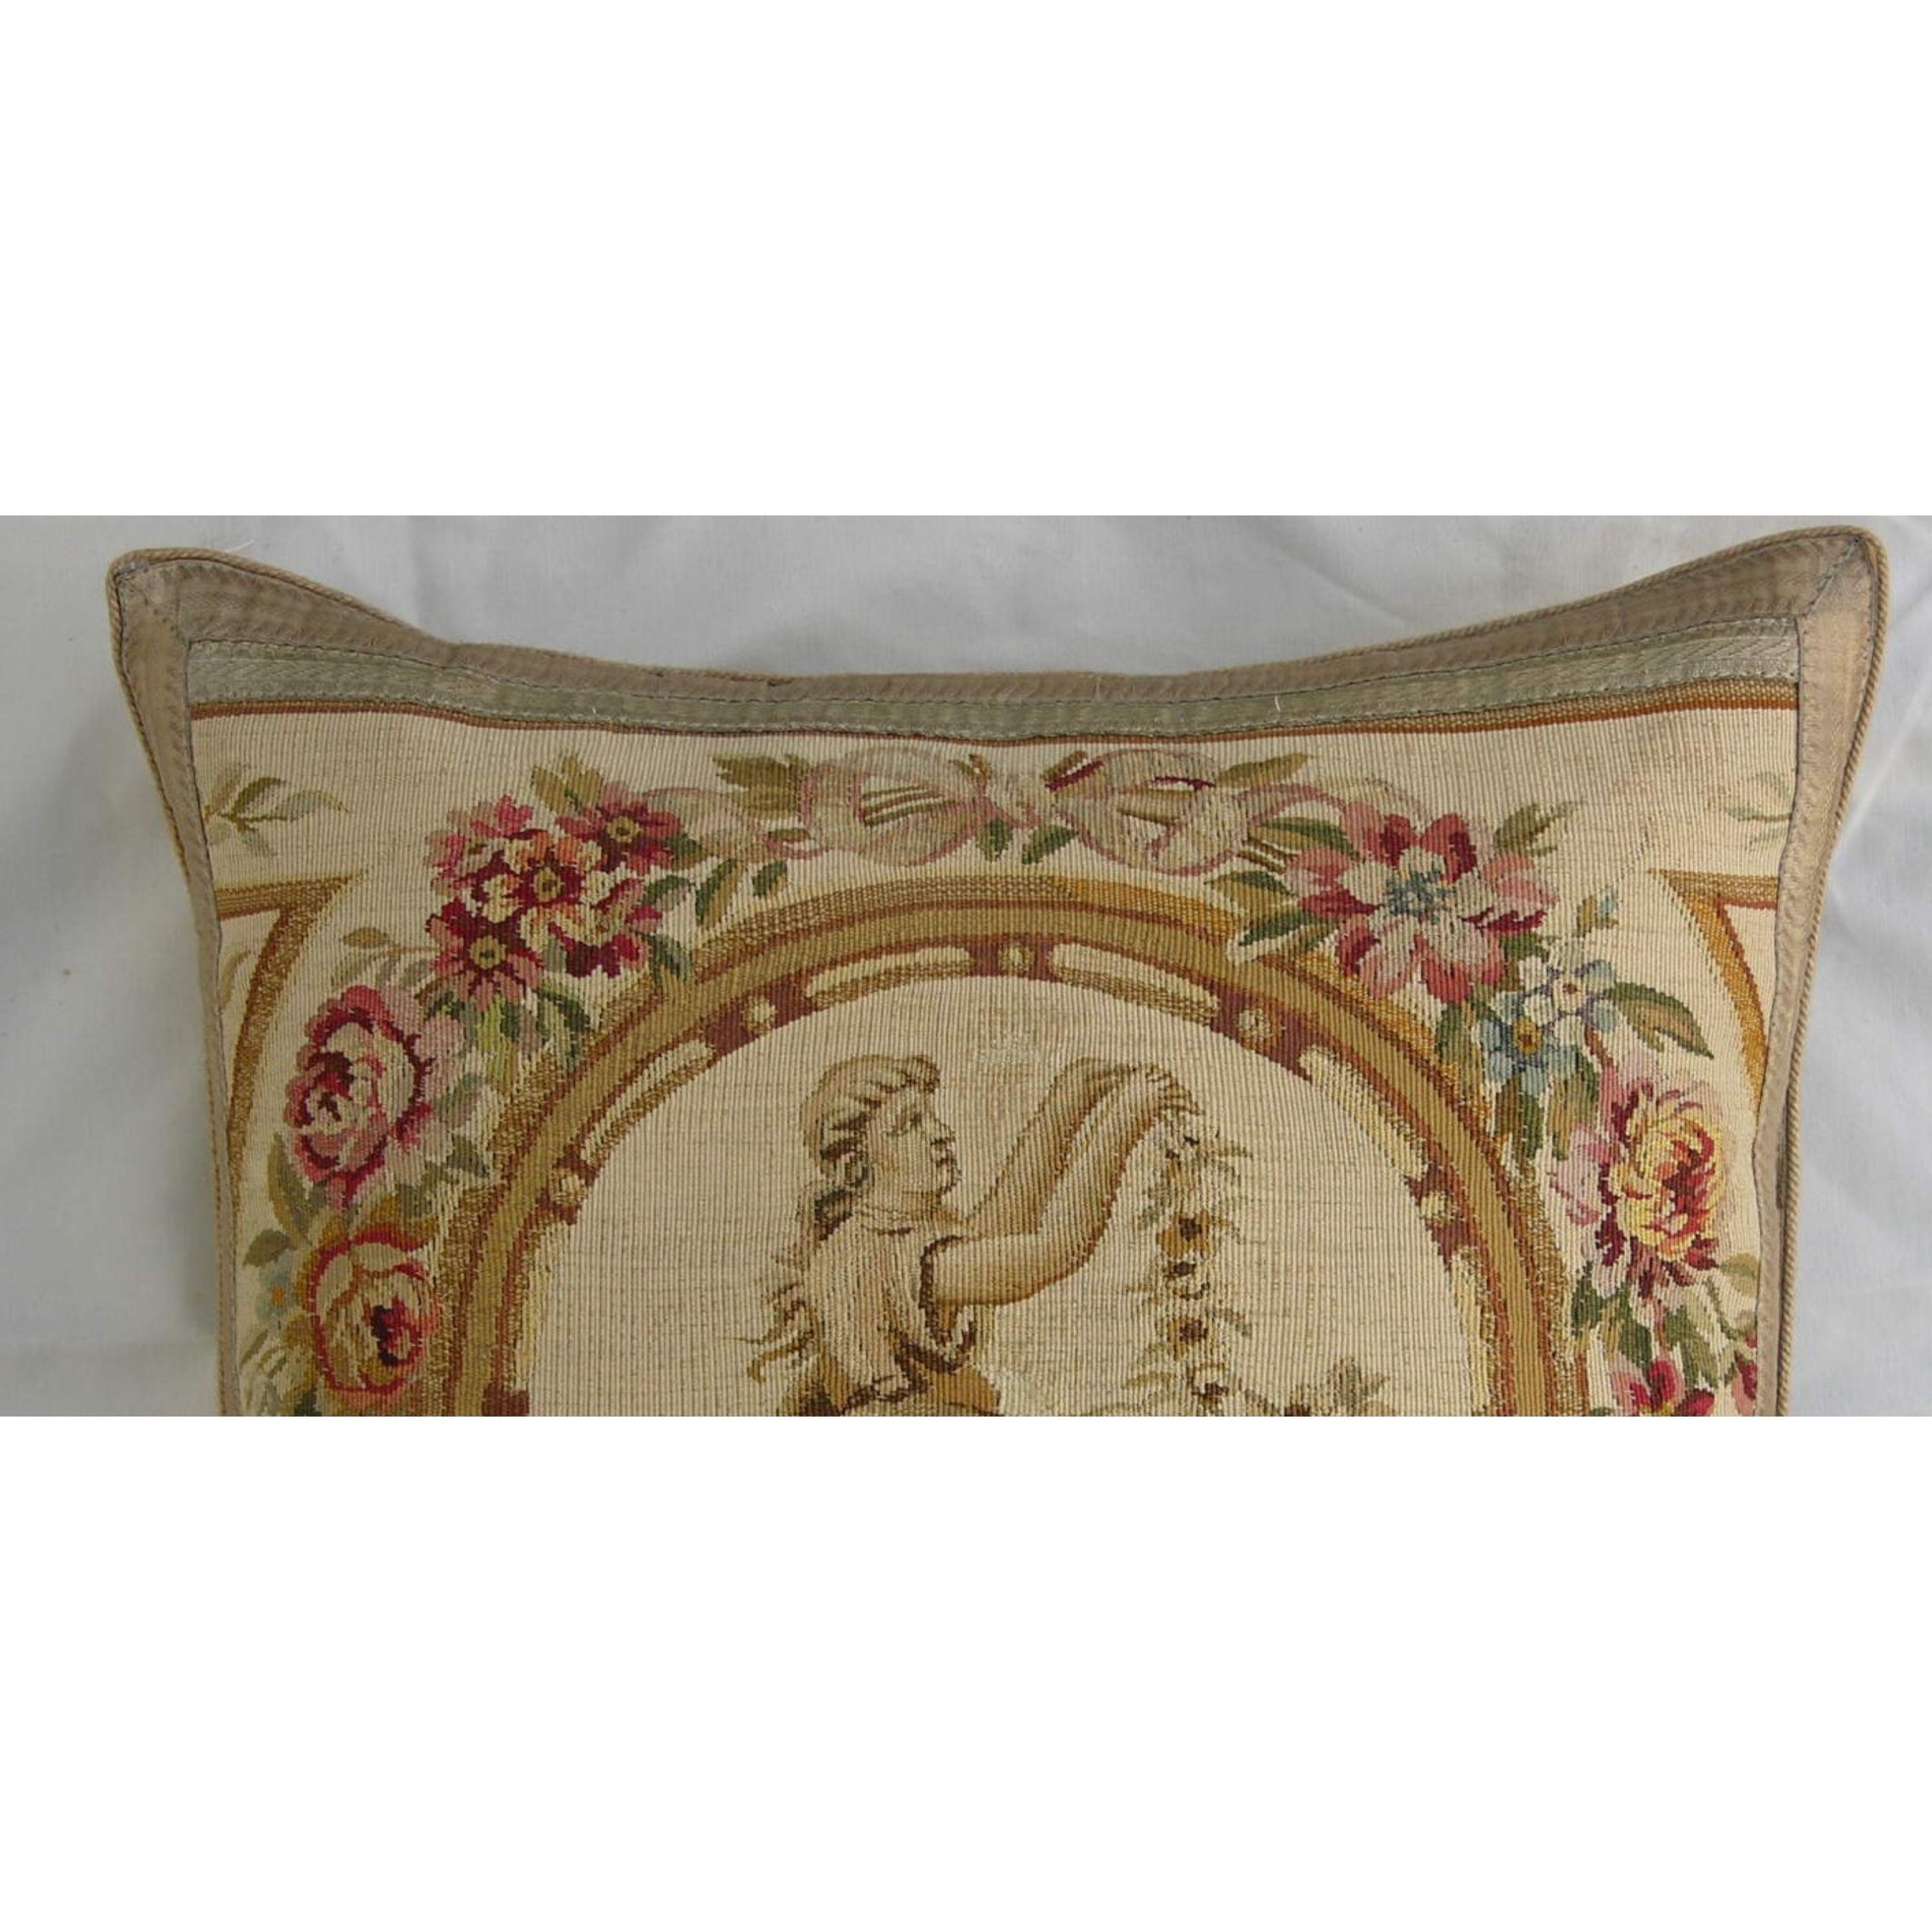 Ancien oreiller en tapisserie d'Aubusson du 18ème siècle 21'' x 20